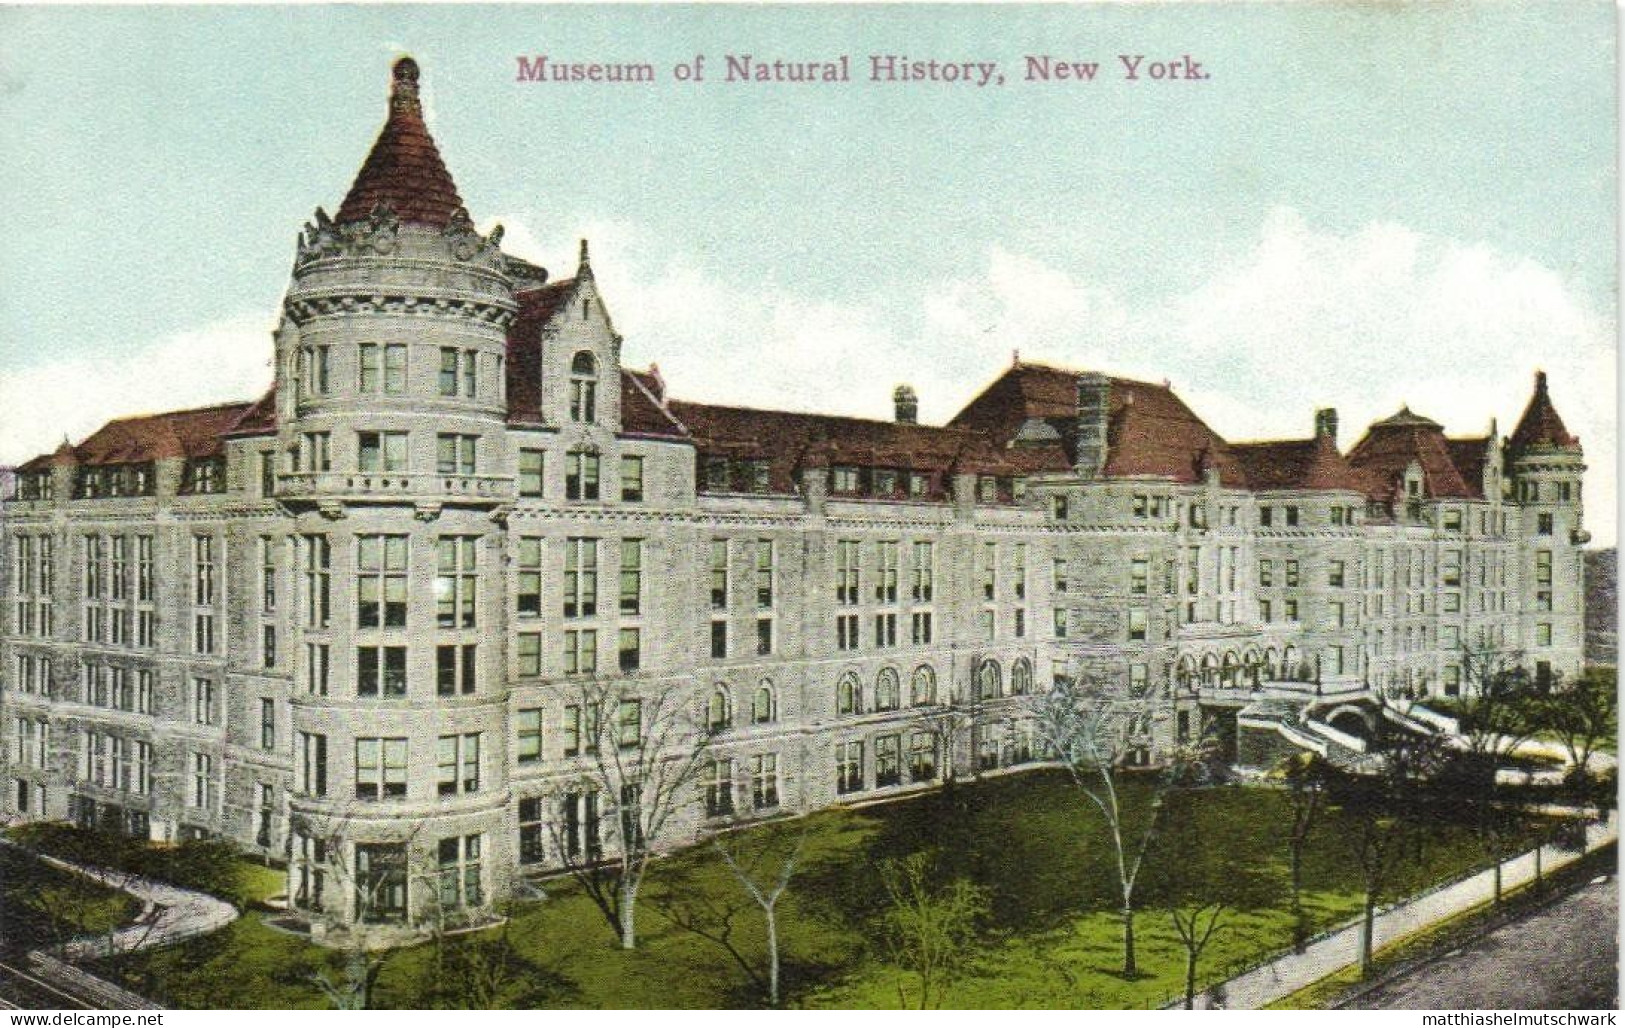 USA - New York – Verschiedene Straßen, Gebäude und Brücken – viele um 1910 - Postkarten (Sammlung von 89)